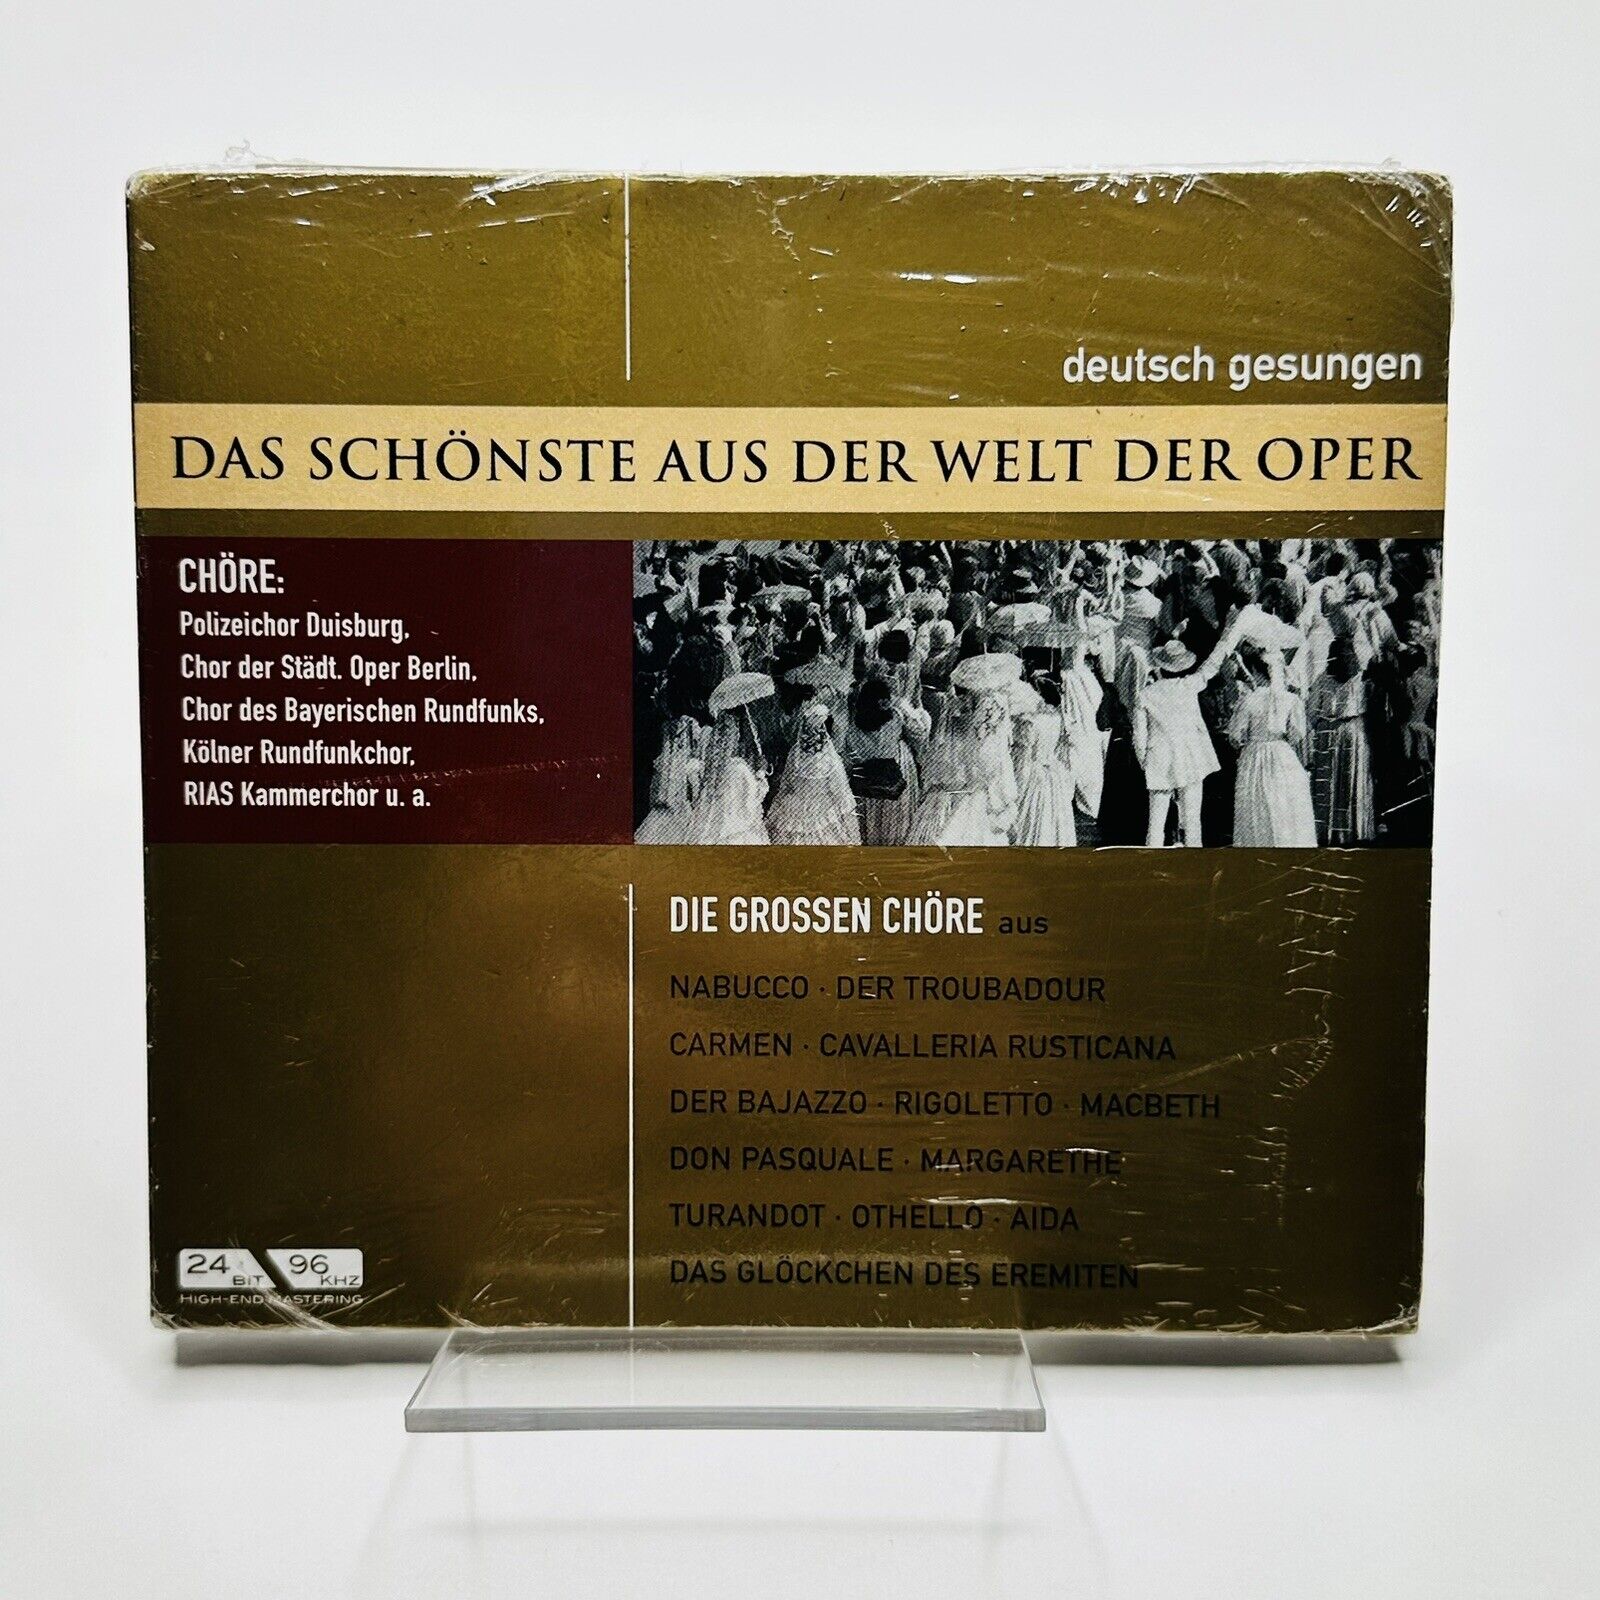 Dad Schonste Aus Der Welt Der Oper - Die Grossen Chore (The Great Choirs) (CD)